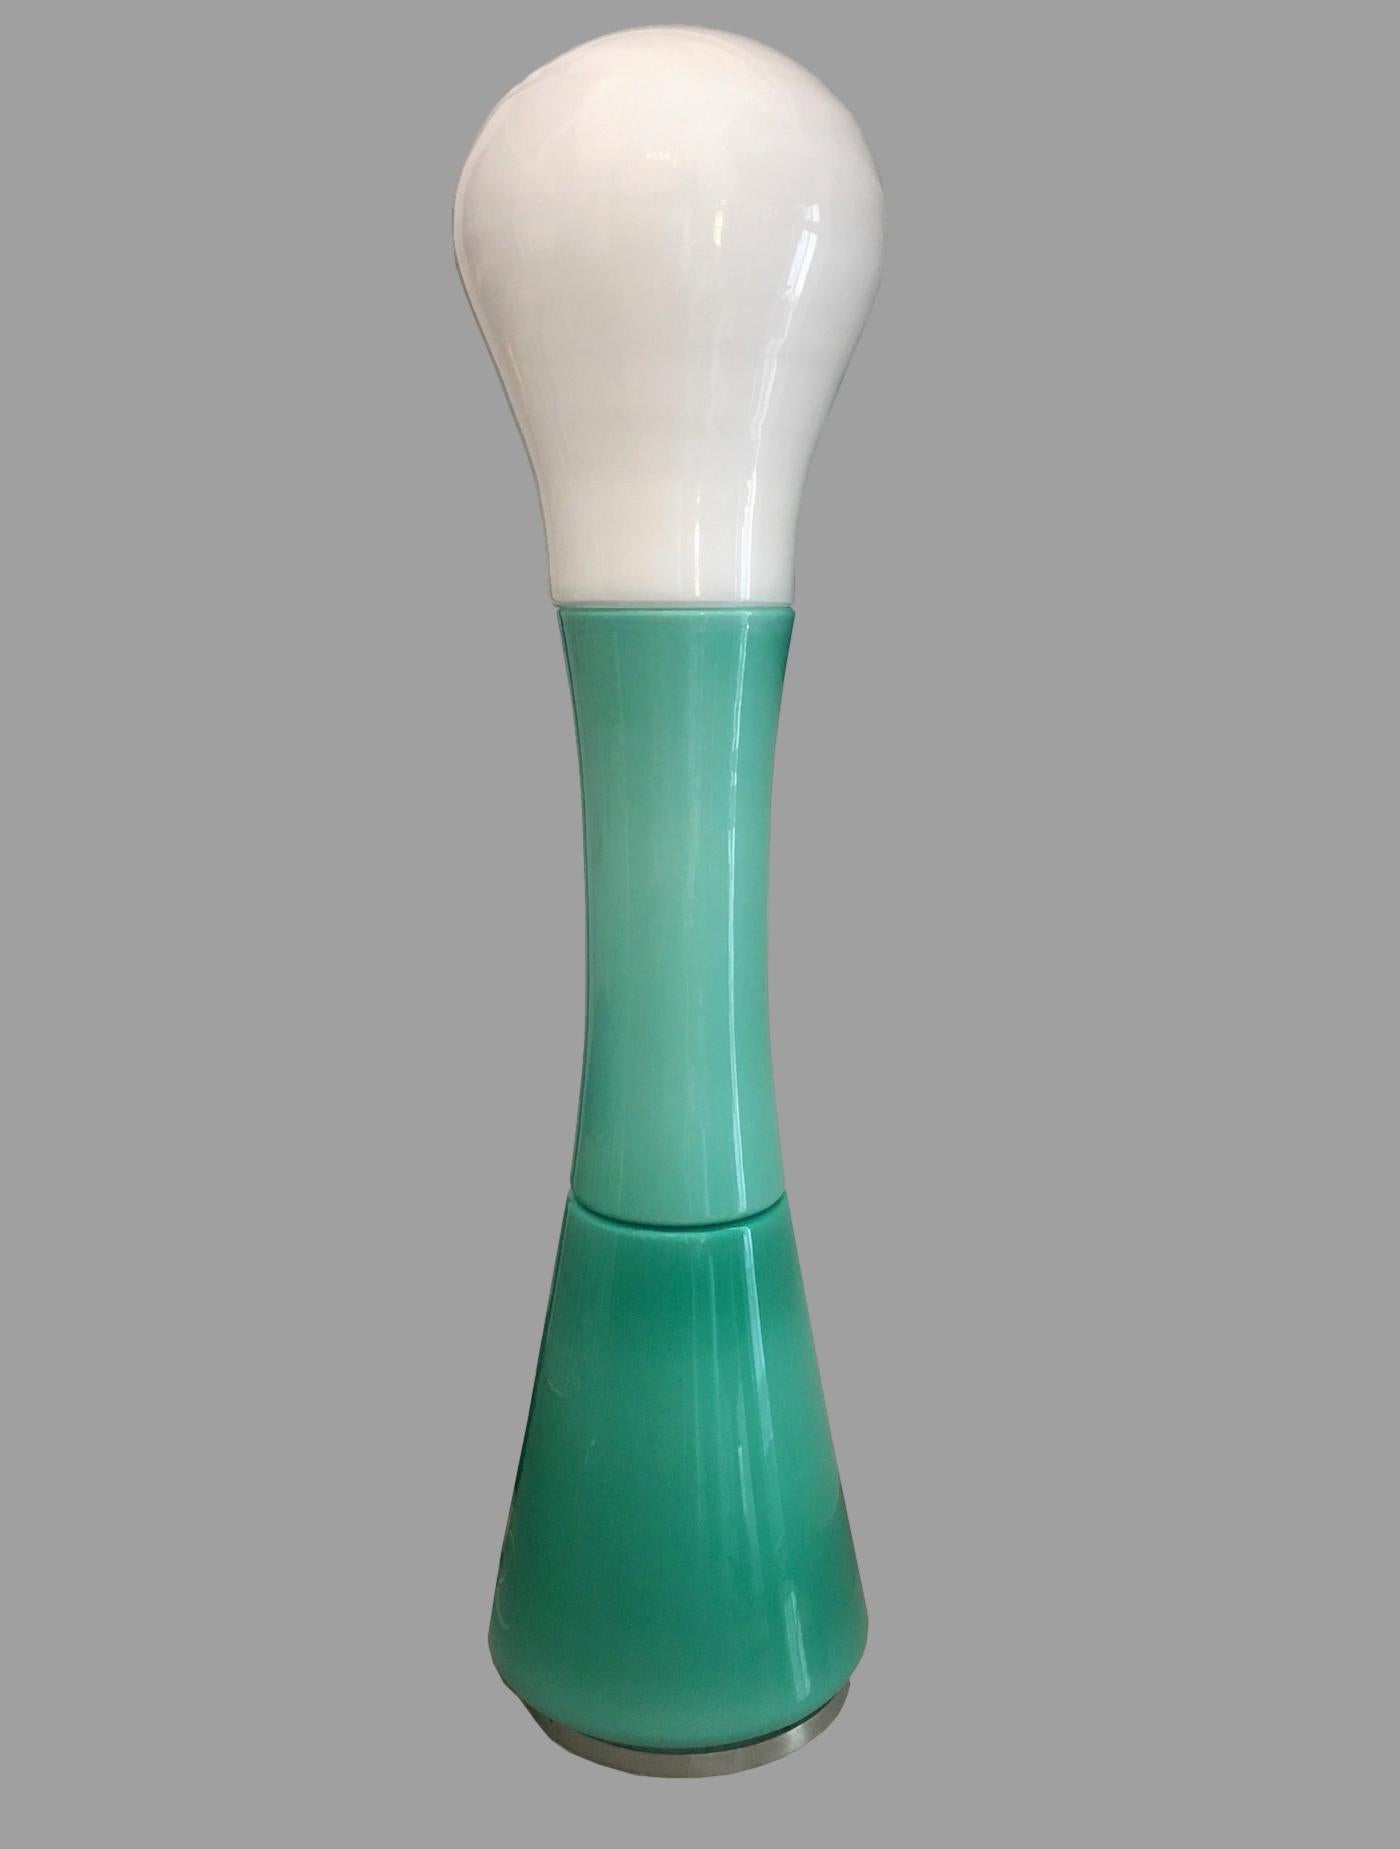 Très rare lampadaire produit dans les années 1960 par Selenova d'après un dessin de Carlo Nason.
Base avec tige en métal sur laquelle sont montés deux magnifiques verres verts et un haut blanc.